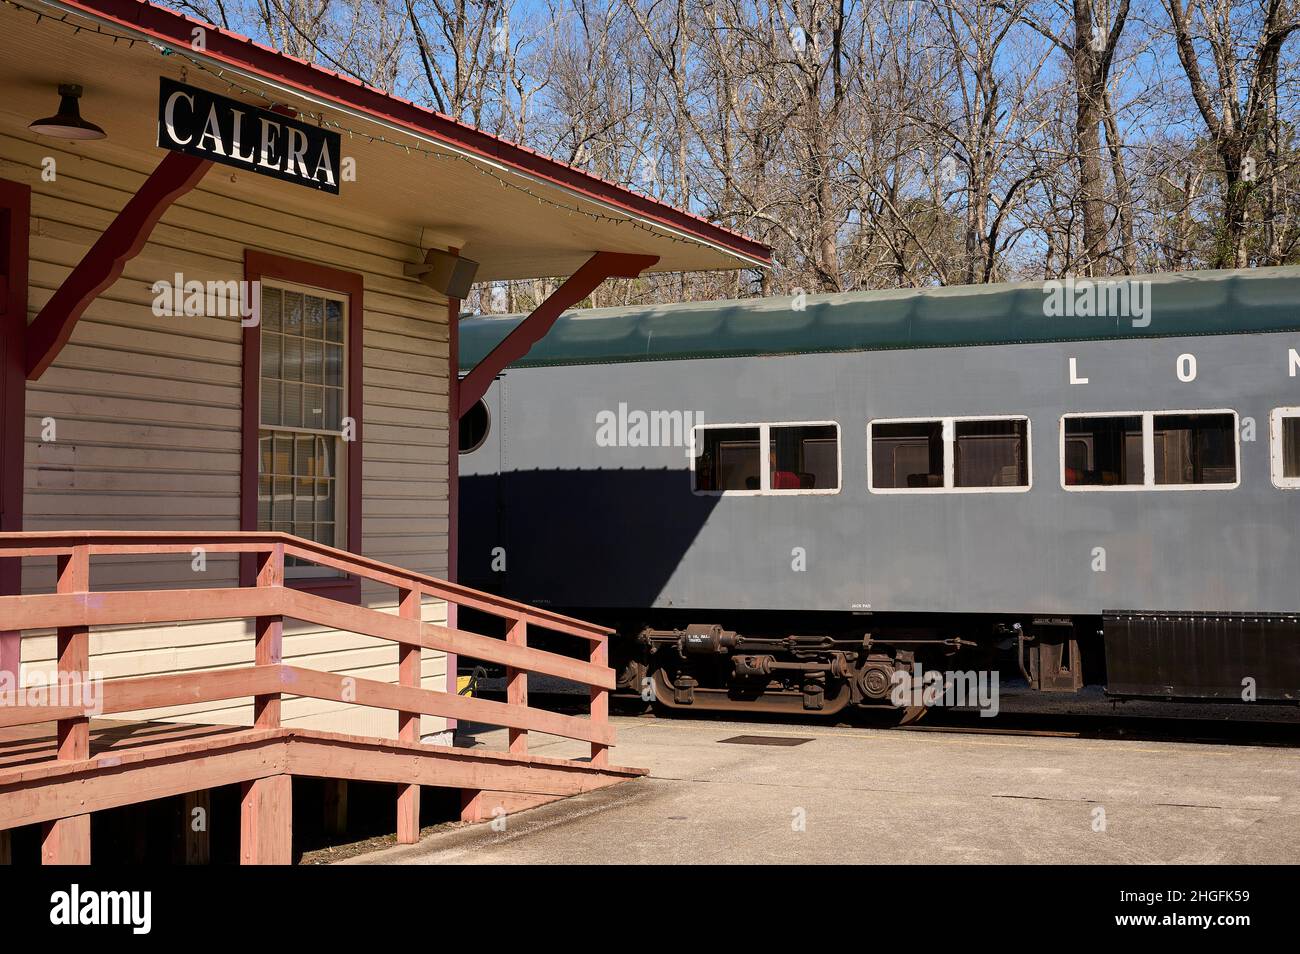 Au coeur de la gare du musée du chemin de fer de Dixie exposée, y compris une voiture pullman à Calera, Alabama, Etats-Unis. Banque D'Images